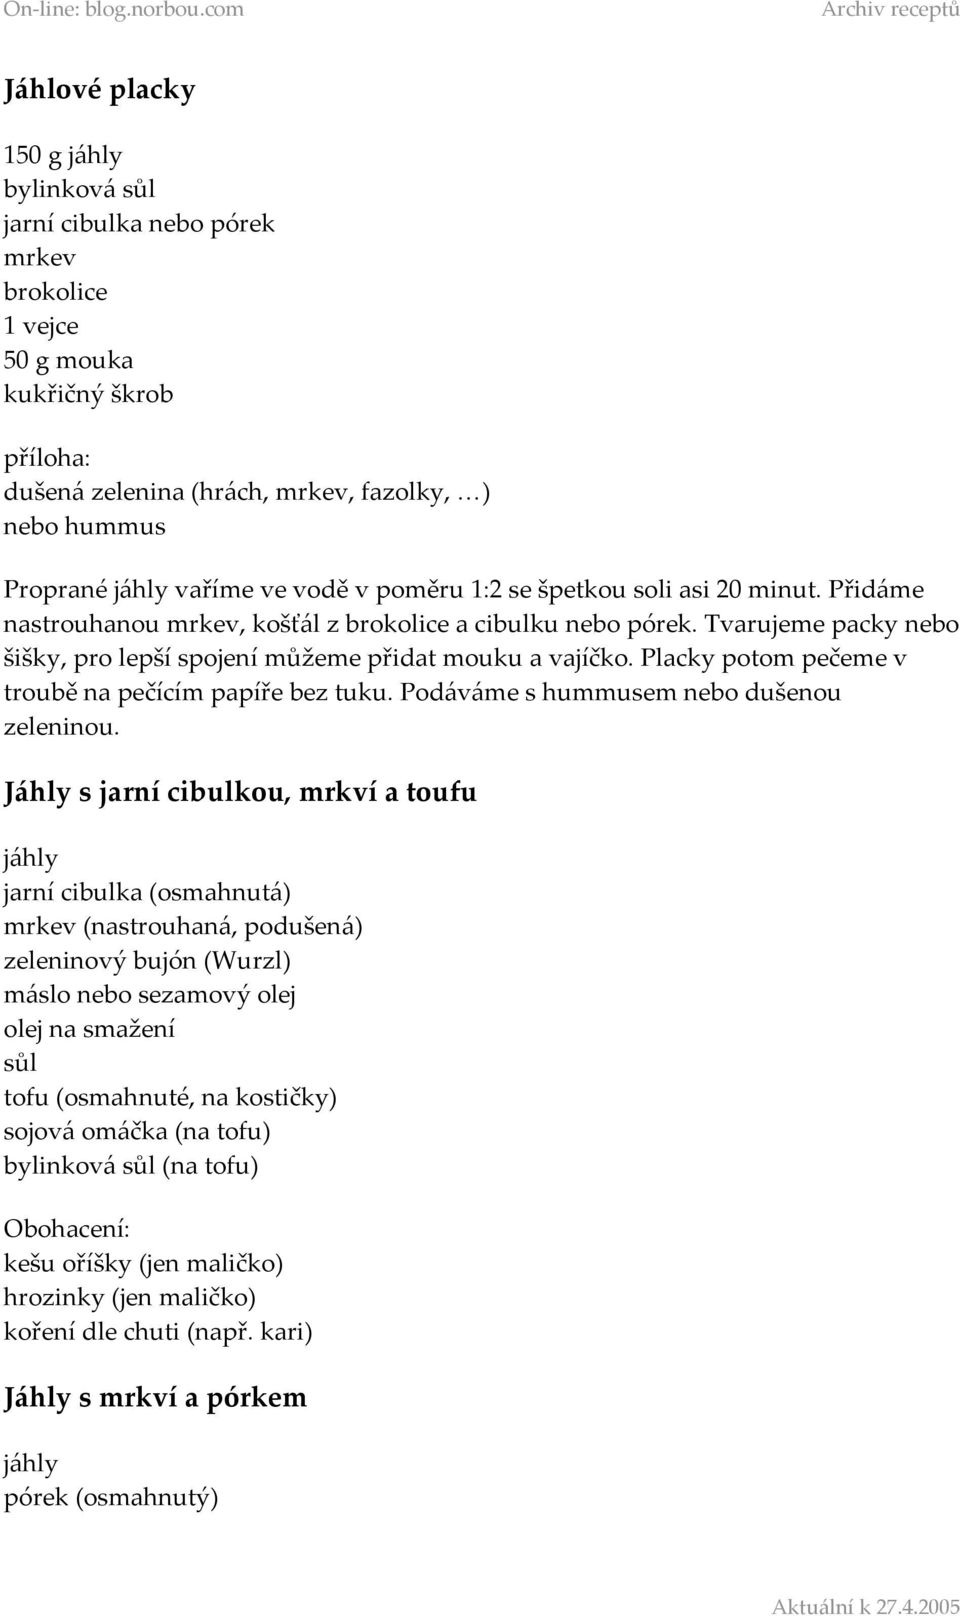 Obsah. Indická kuchyně. Hlavní recepty. Snídaně. Čínská kuchyně. Polévky.  Sladkosti. Ostatní... - PDF Stažení zdarma